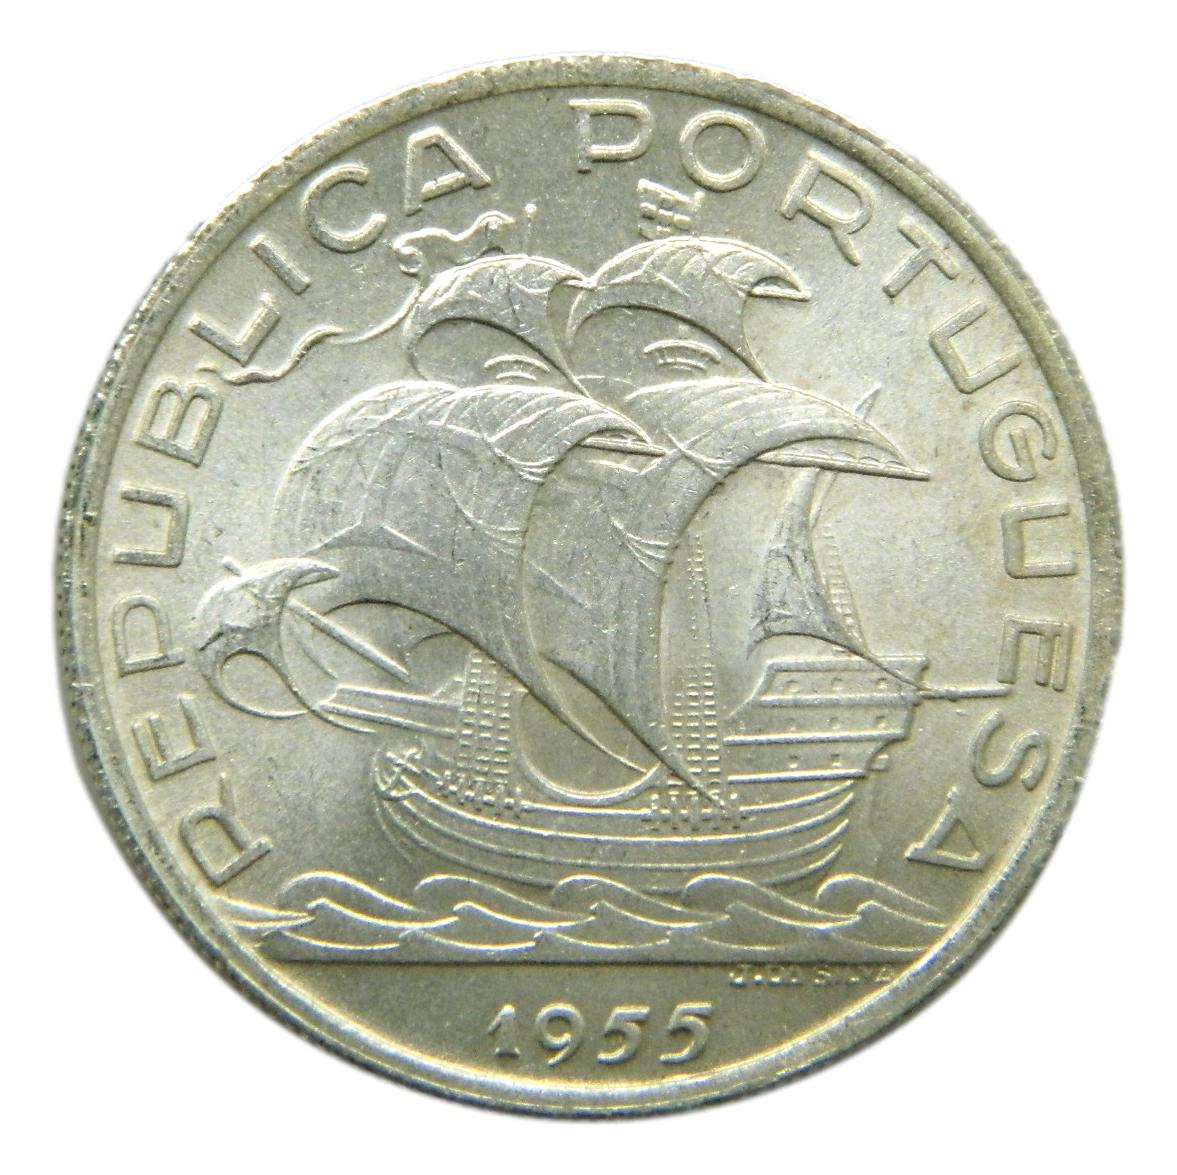 1955 - PORTUGAL - 10 ESCUDOS - PLATA